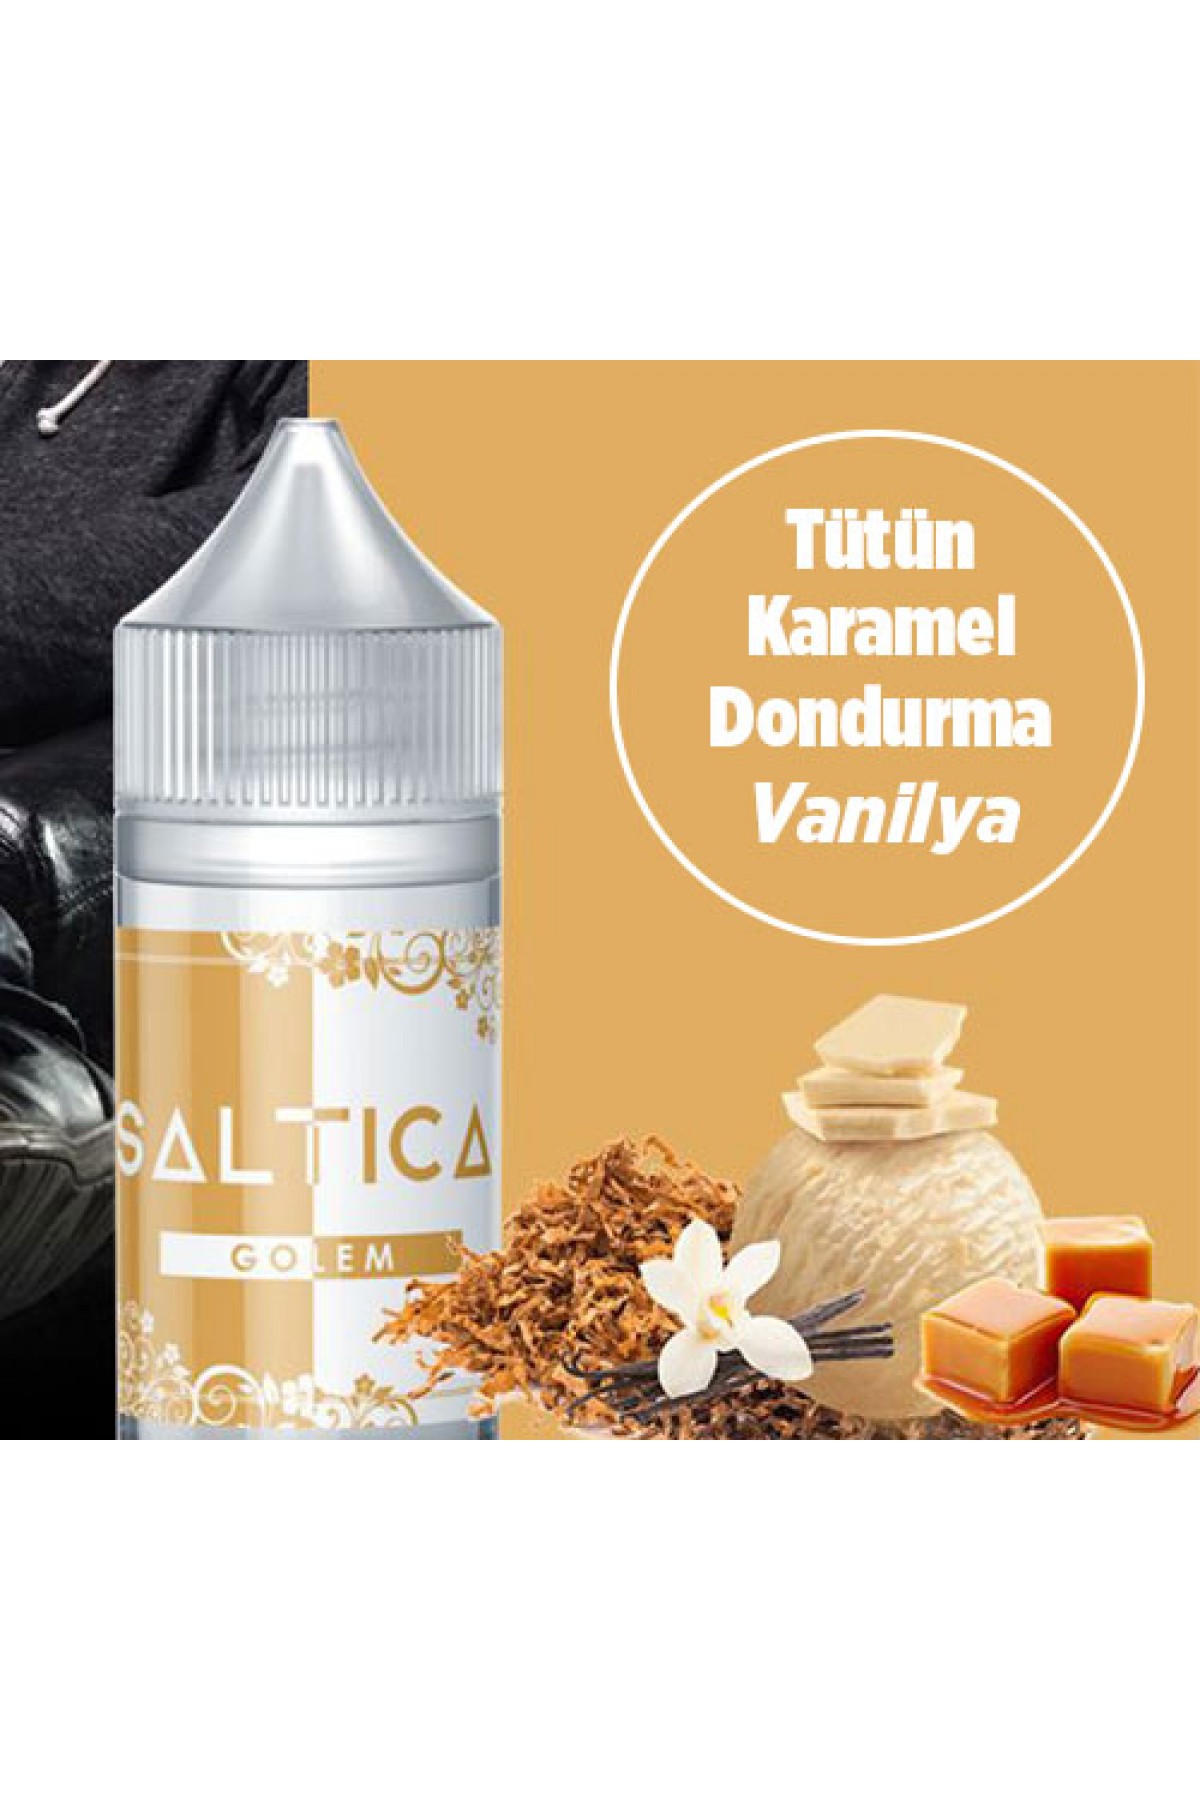 Saltica - Golem Salt Likit (Tütün, Karamel, Dondurma, Vanilya) (30ML)